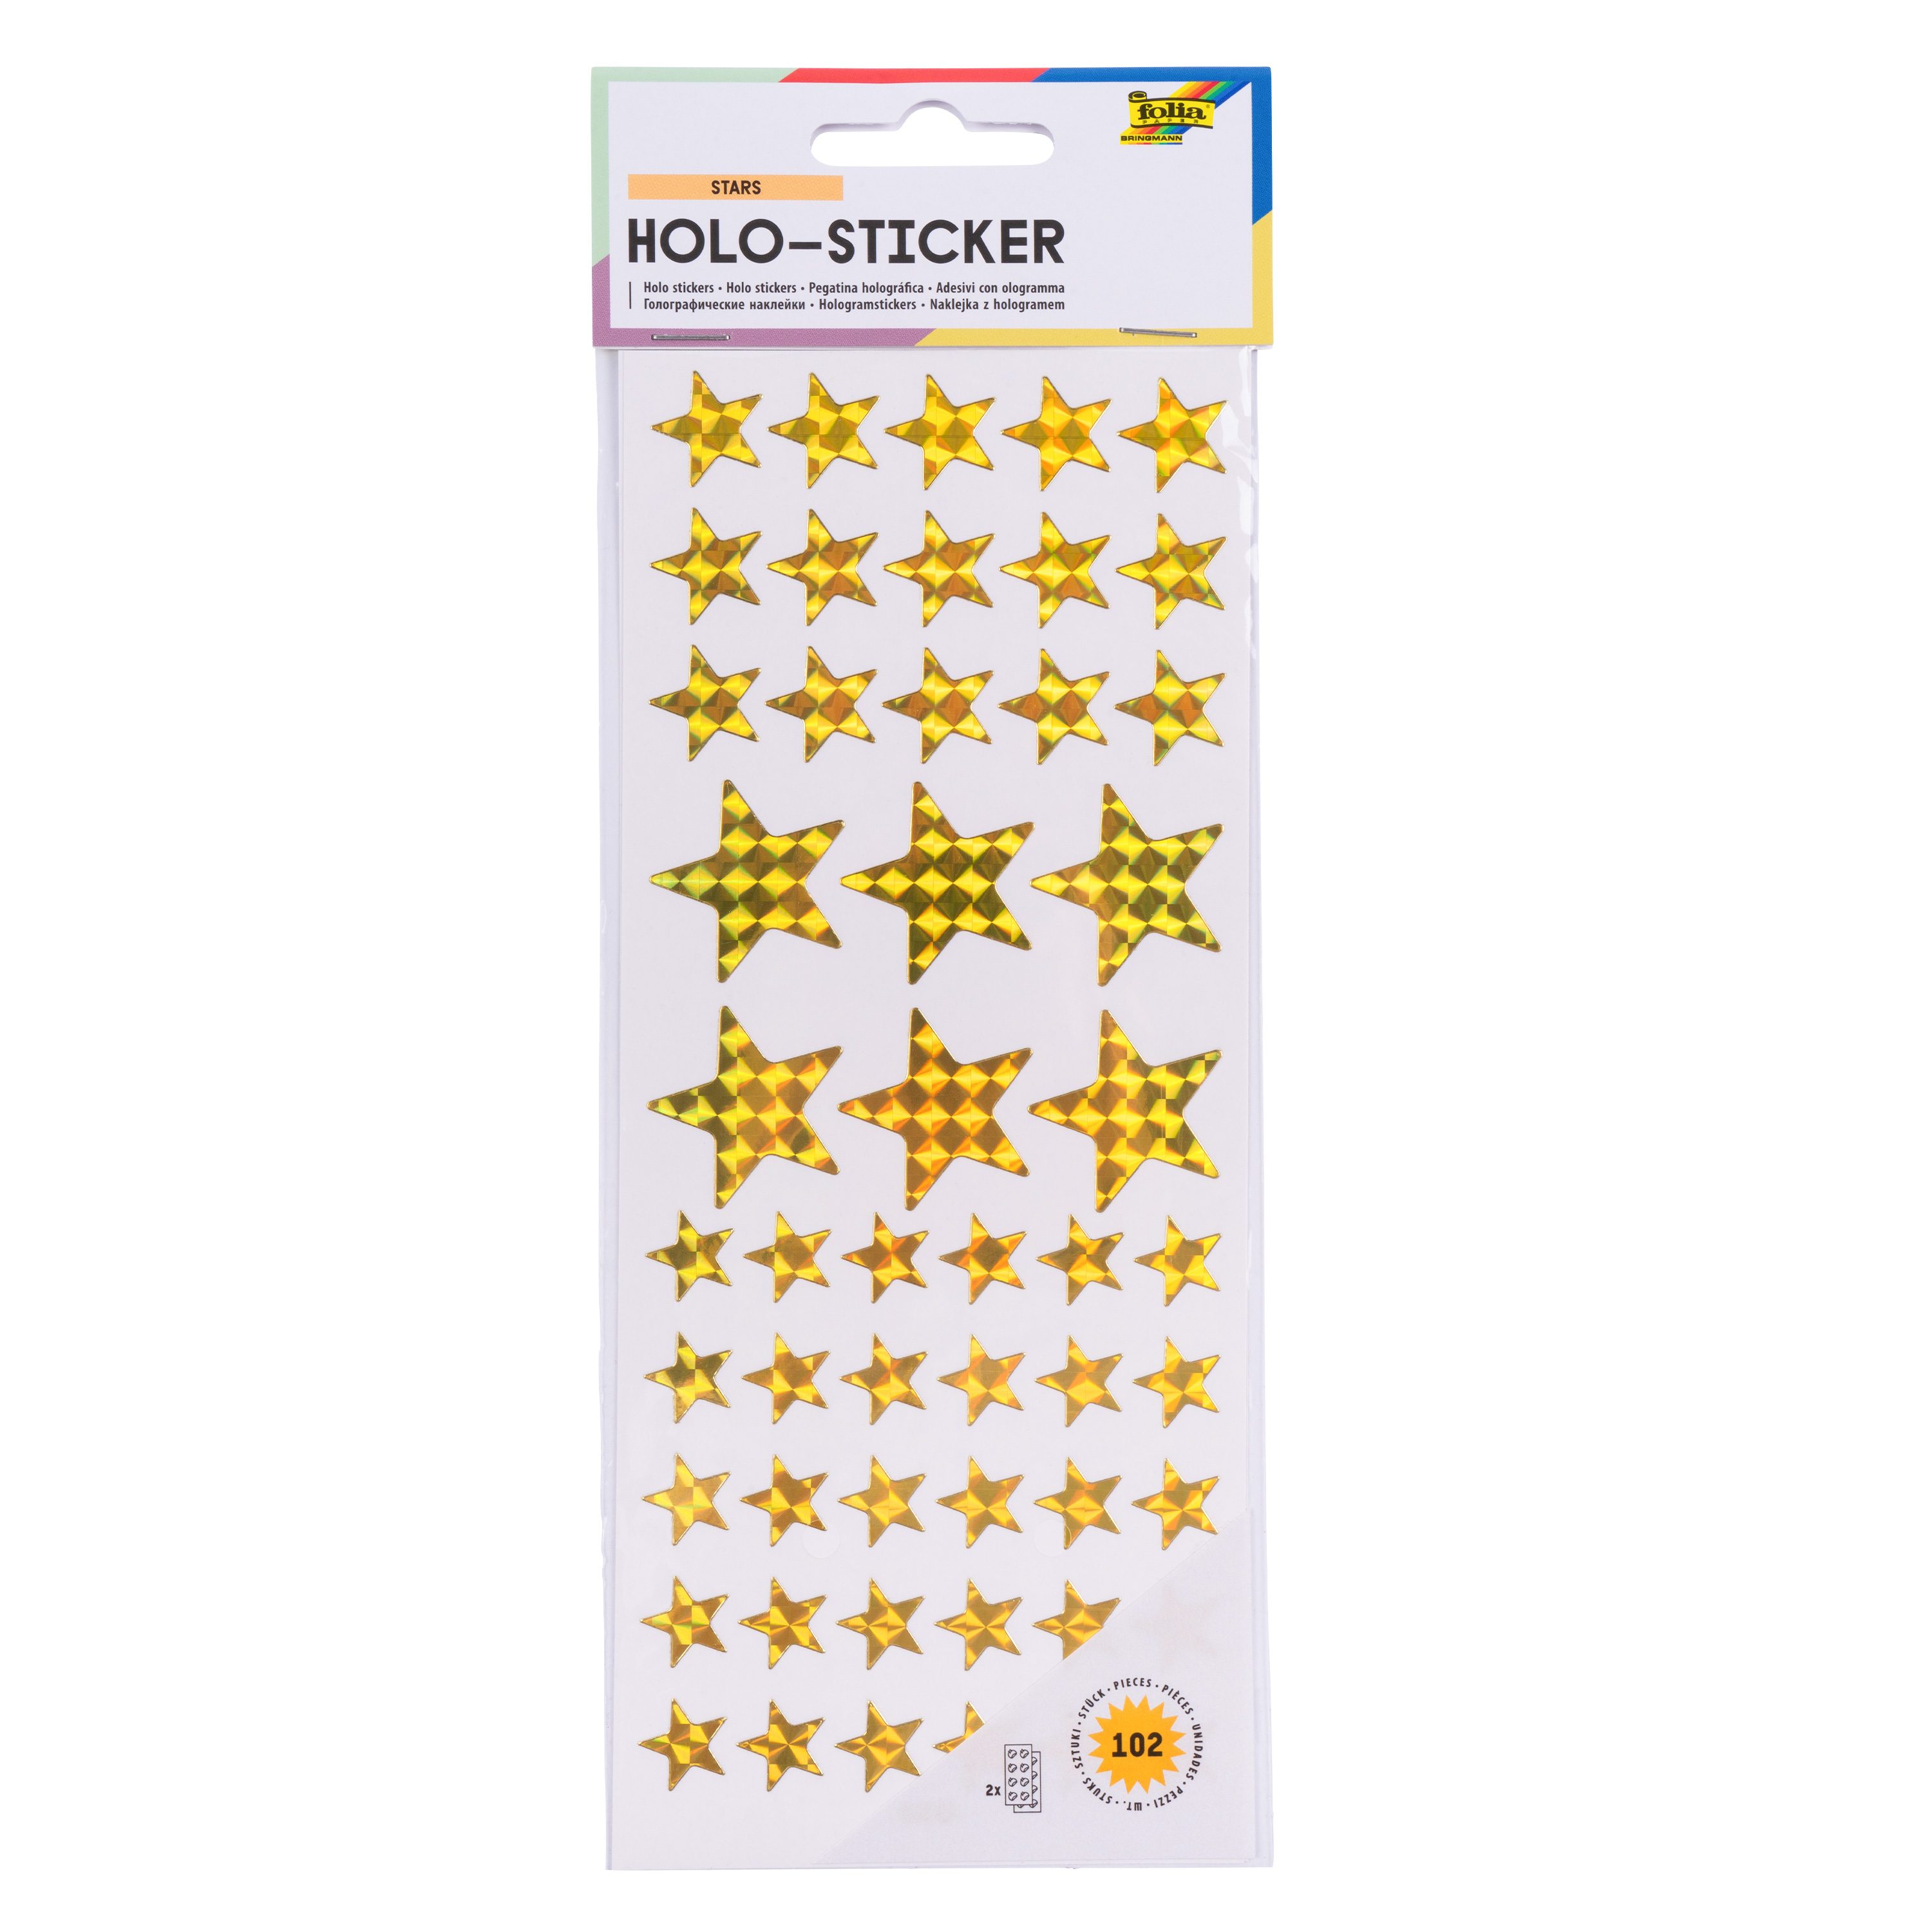 Holo-Sticker 'Sterne - silber & gold', 102 Sticker